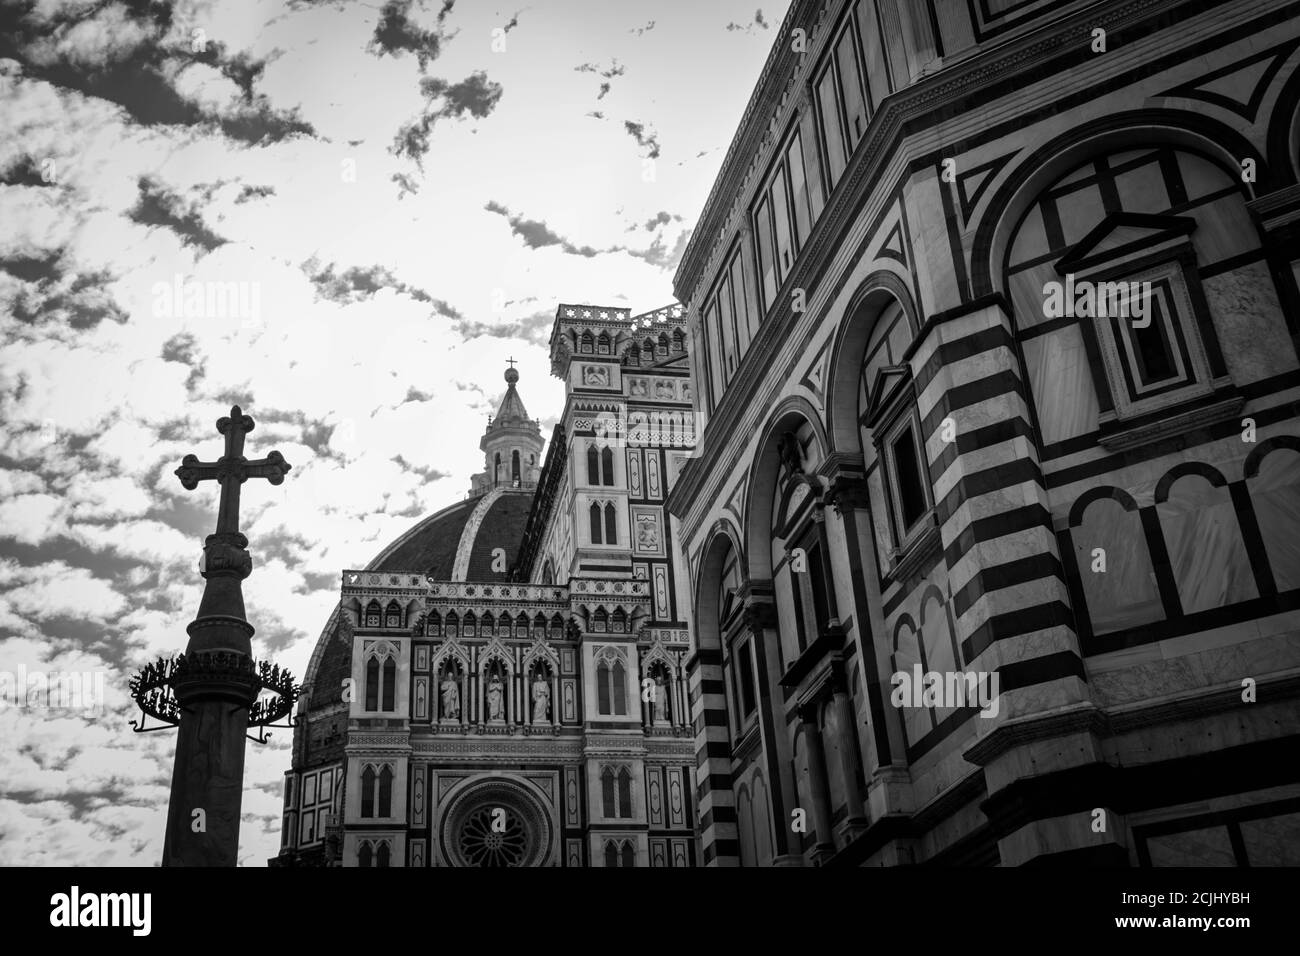 Cathédrale de Florence (Duomo) image en noir et blanc Banque D'Images